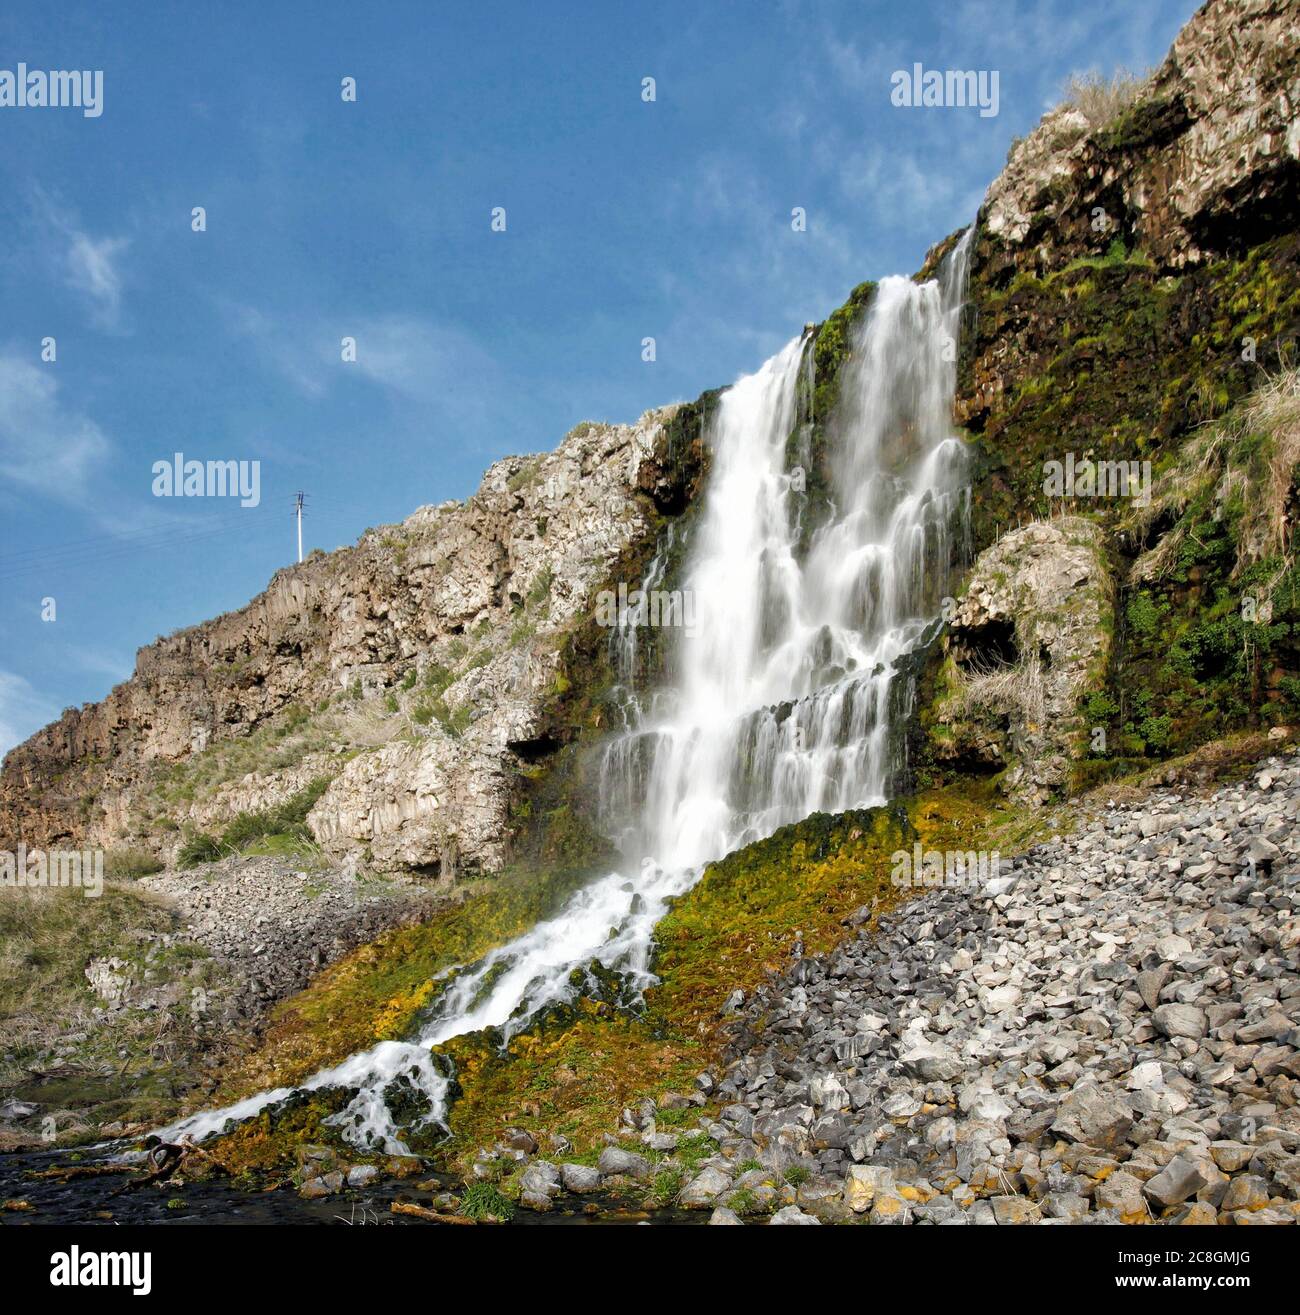 Tausend Quellen, nahe Twin Falls, Idaho, ein natürliches Gebiet, in dem Wasser aus dem Boden sprudelt und Wasserfälle auf der Seite der Klippen bildet. Stockfoto